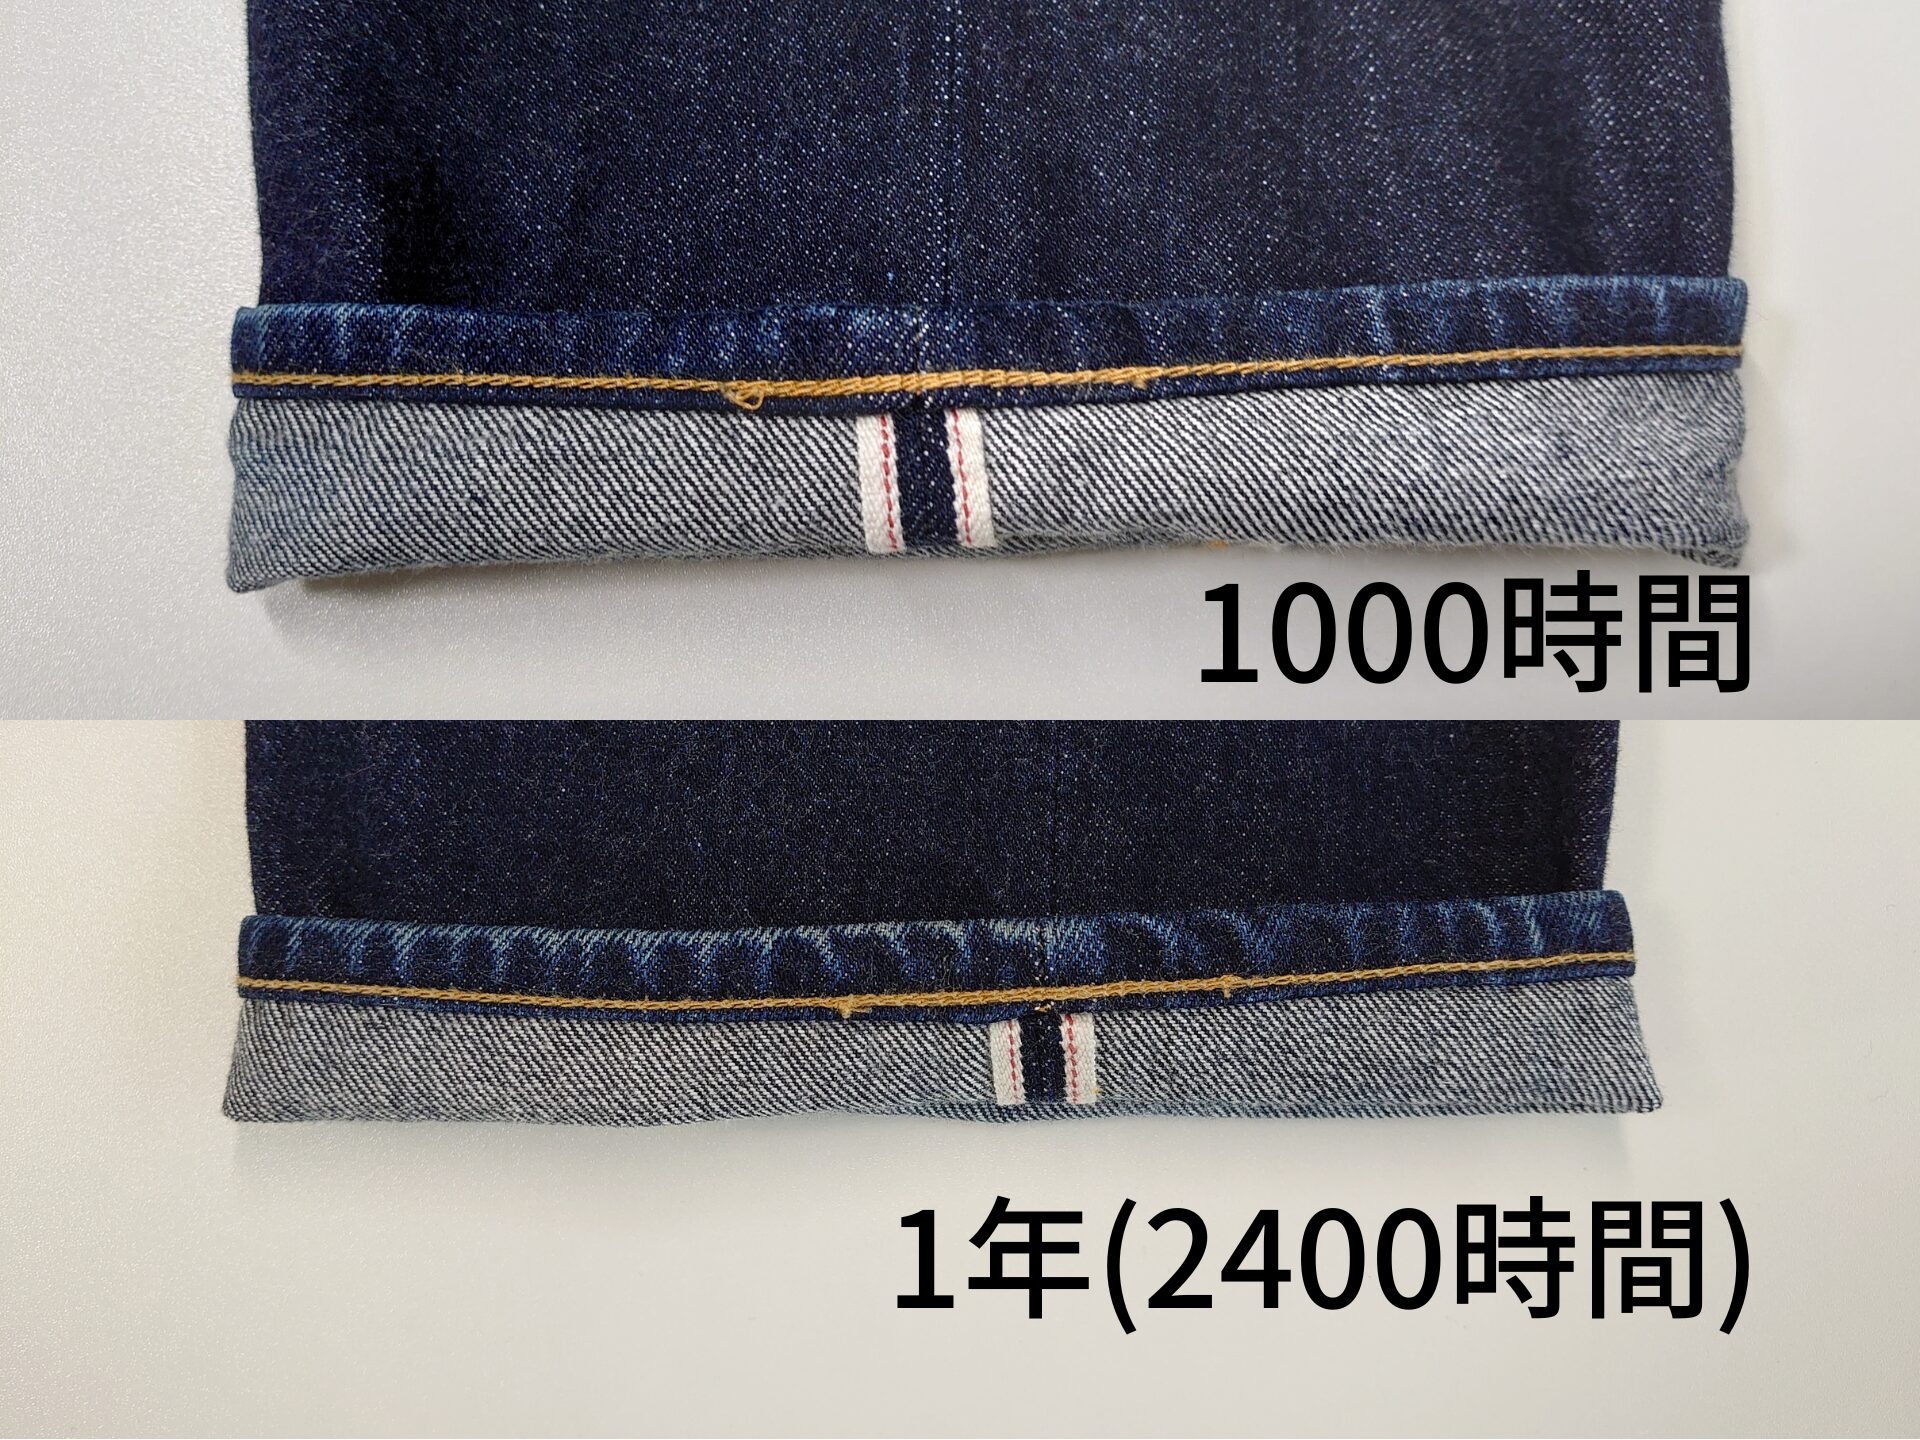 1000時間と1年の裾のパッカリング比較